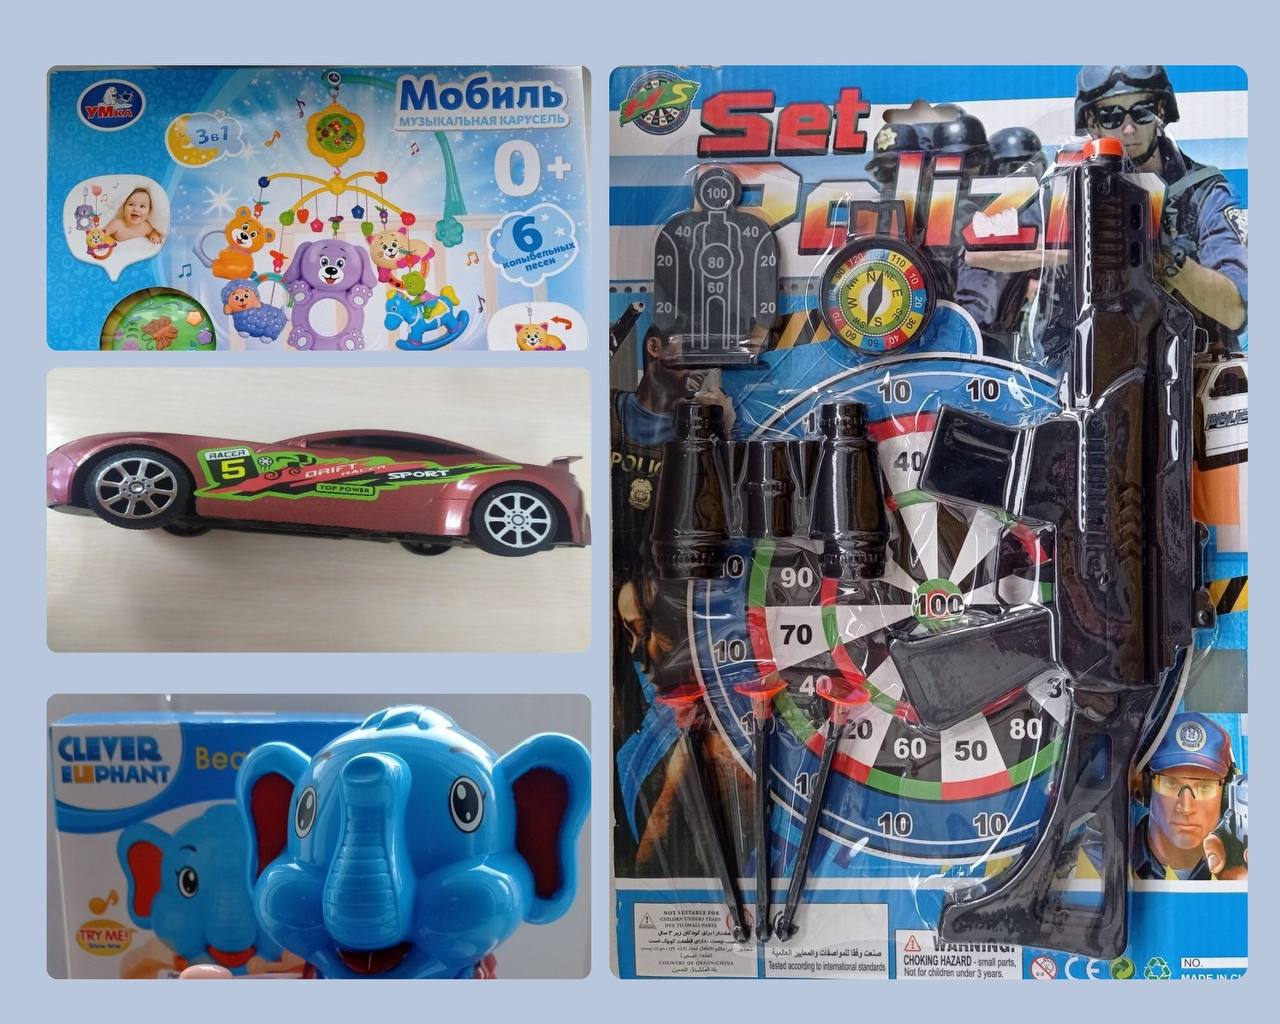 В Беларуси запретили продавать опасные детские игрушки. Что в них было не так?